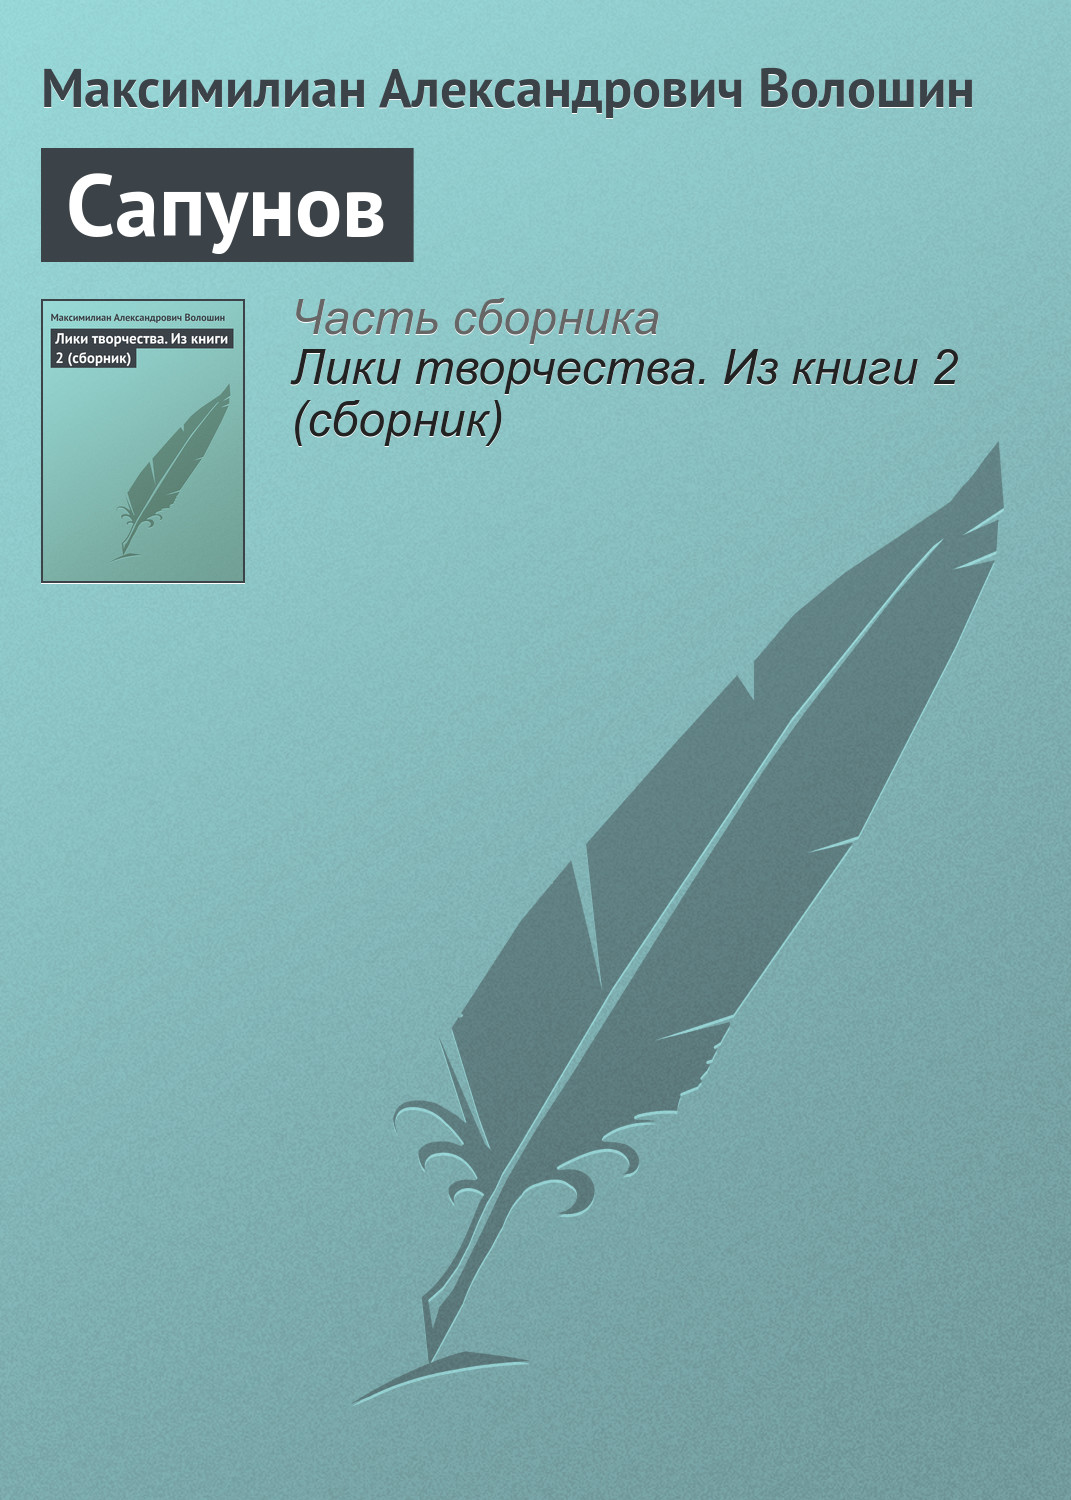 Книга Сапунов из серии , созданная Максимилиан Волошин, может относится к жанру Критика. Стоимость электронной книги Сапунов с идентификатором 22833618 составляет 5.99 руб.